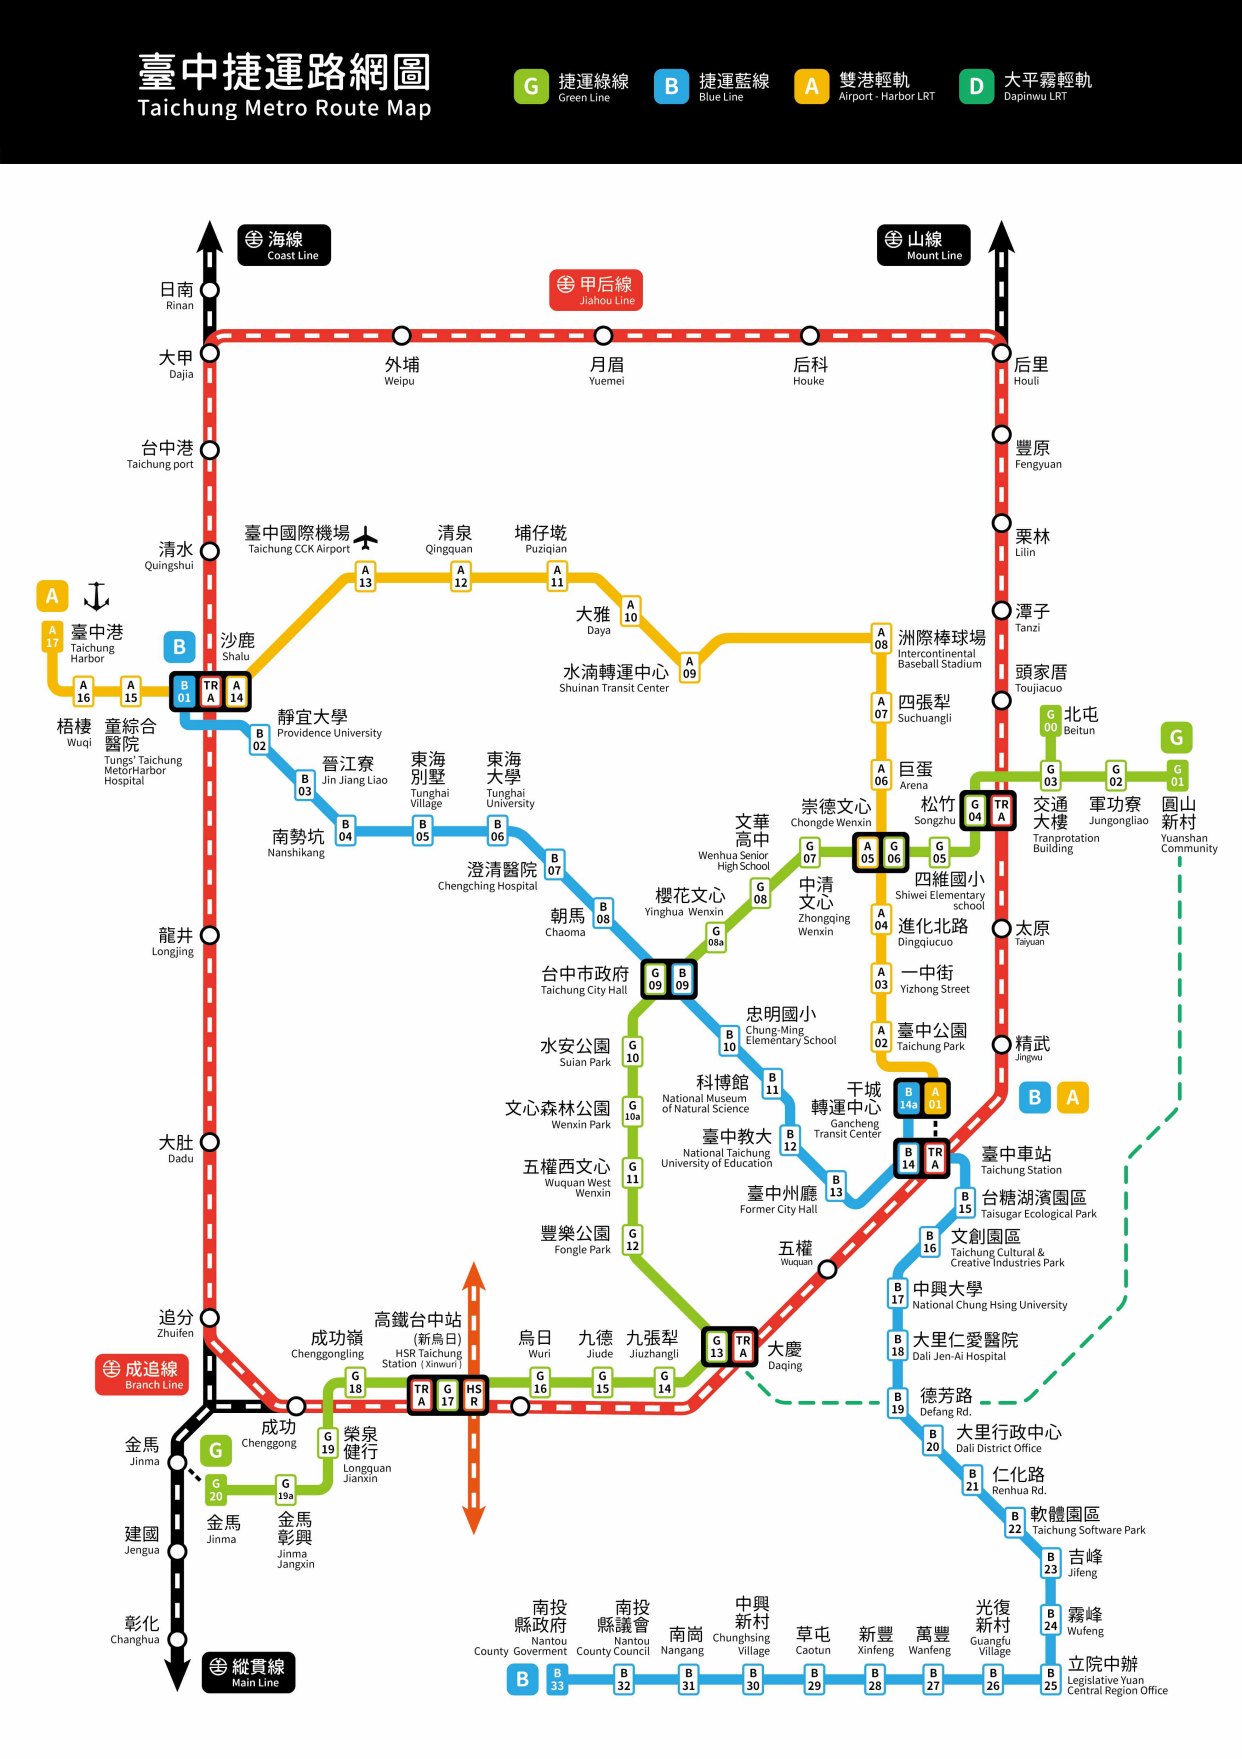 台湾第三大城市,台中市规划建设4条轨道交通,1号线年底开通